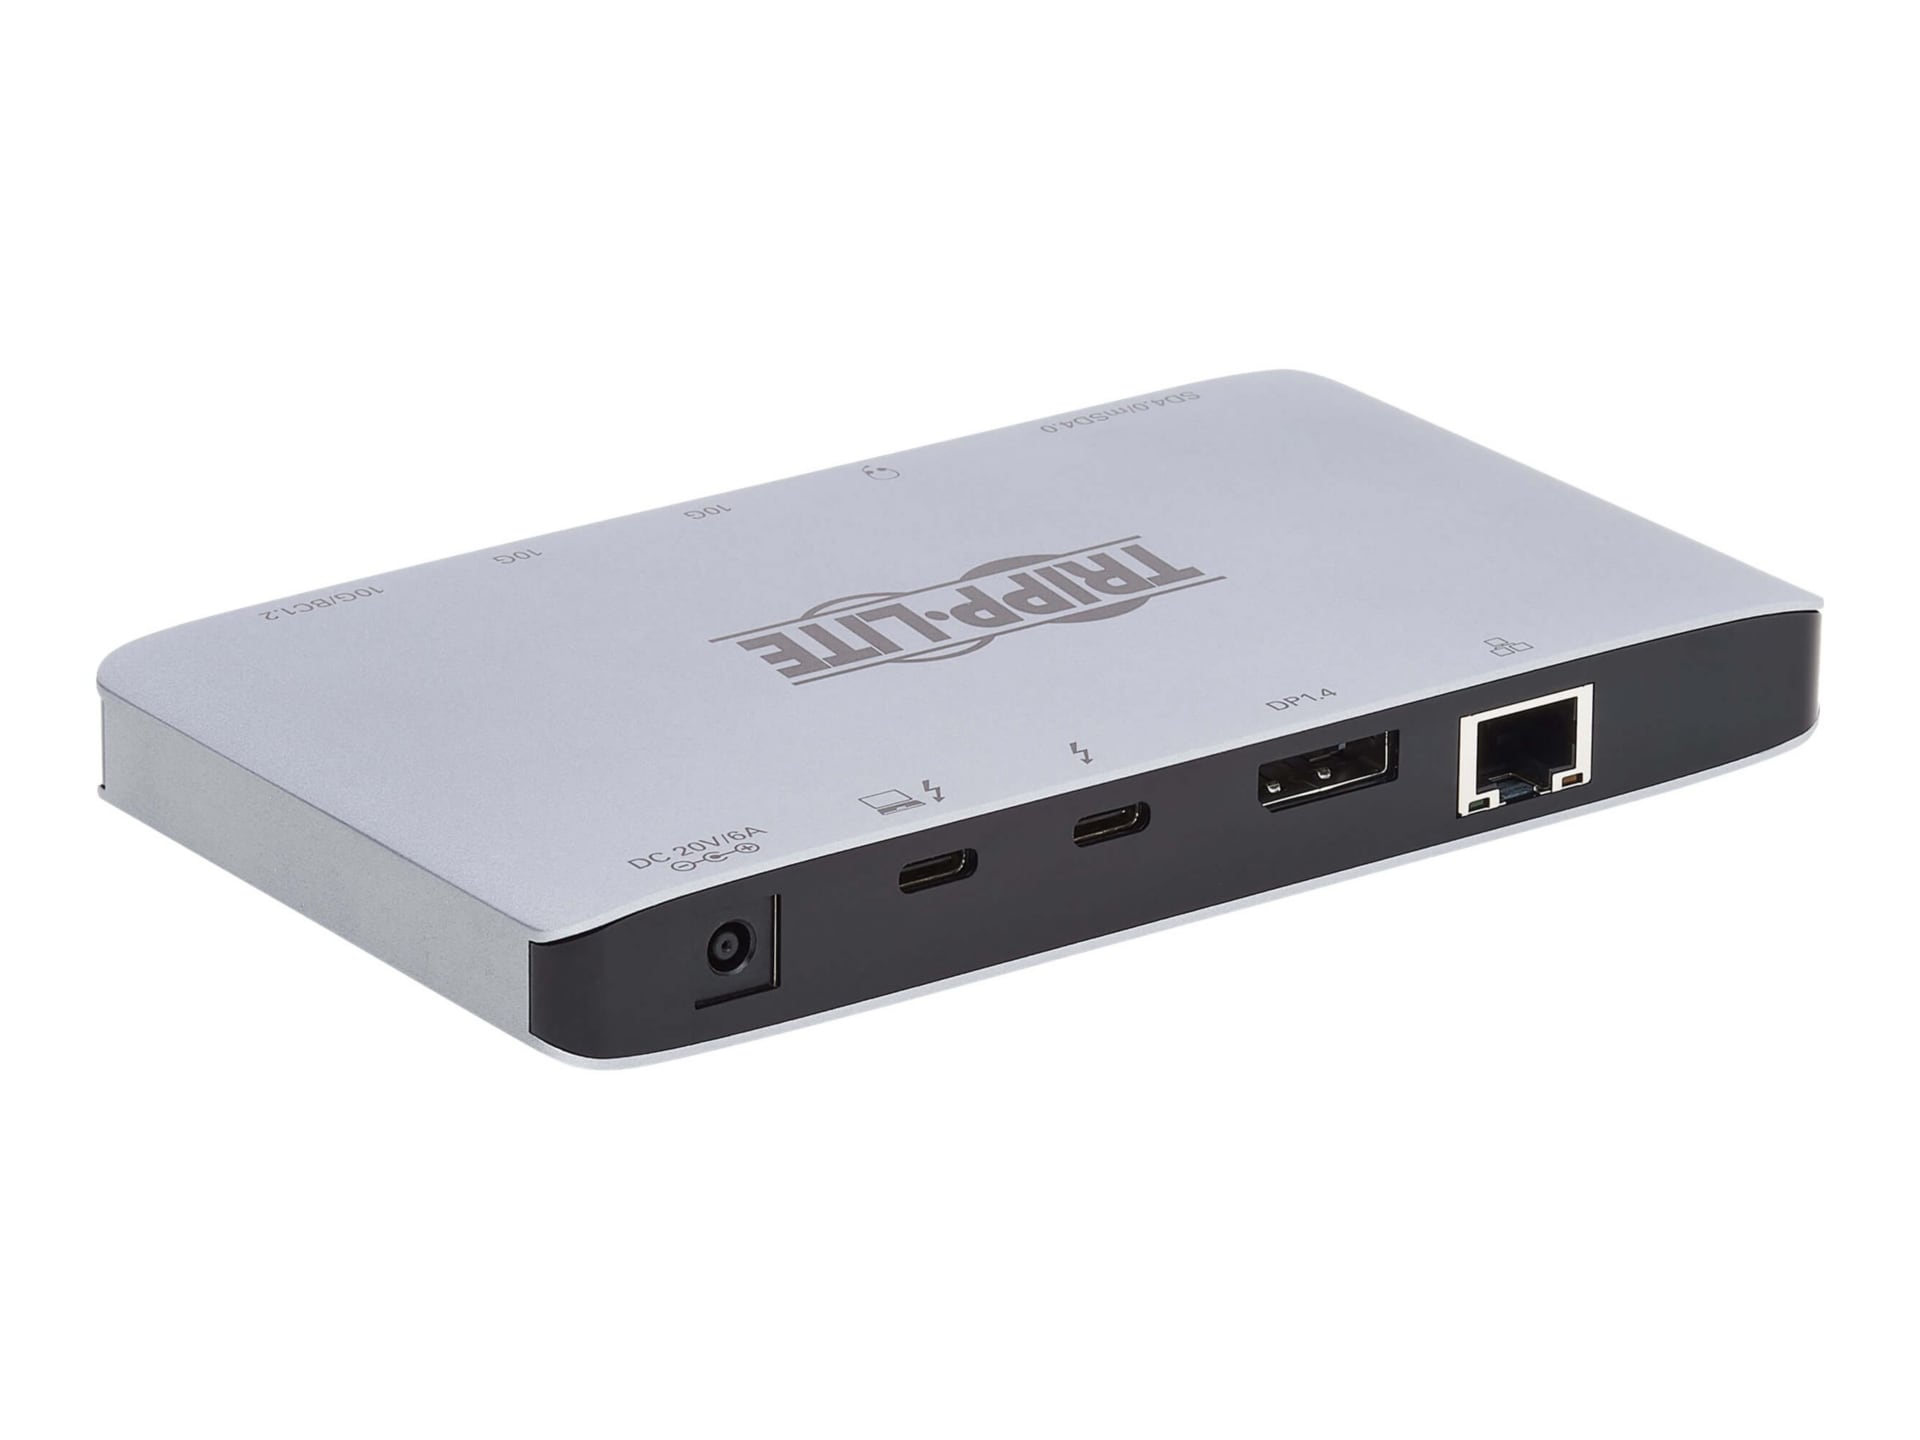 Tripp Lite Thunderbolt 3 Dock Dual Display 8K DisplayPort USB A/C Hub Gbe